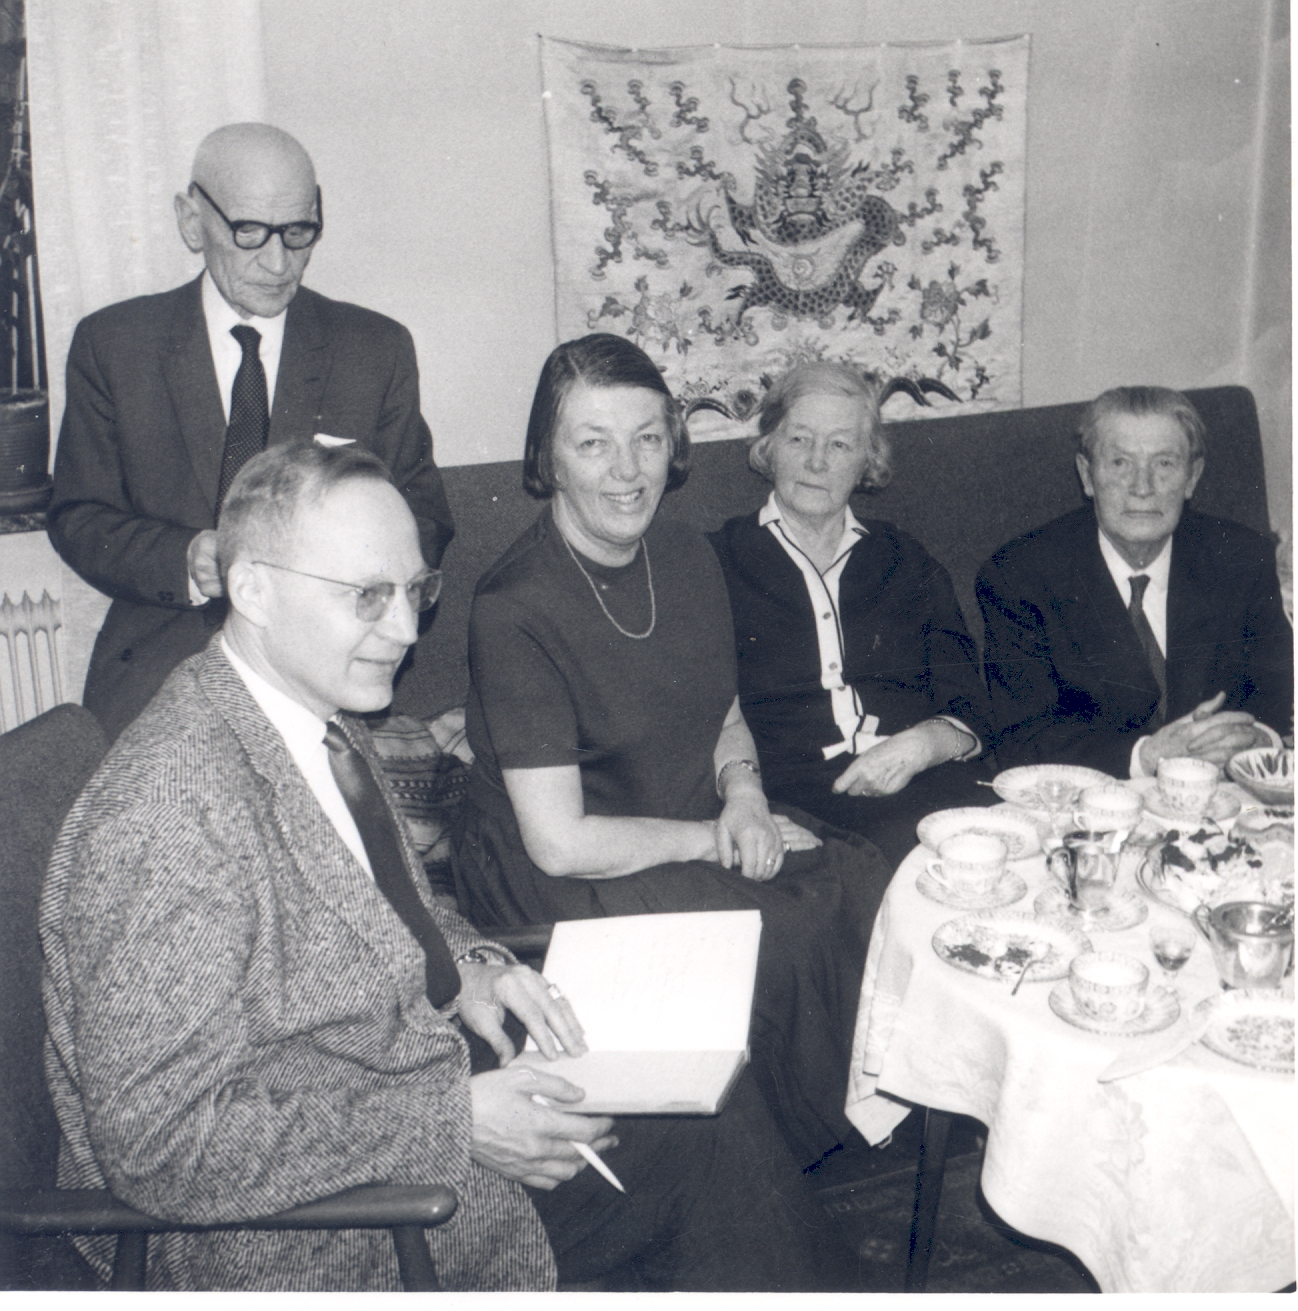 OLAF Millert, Artur Adson, Hedda Hacker, Marie Under and Johannes Aavik [1966]